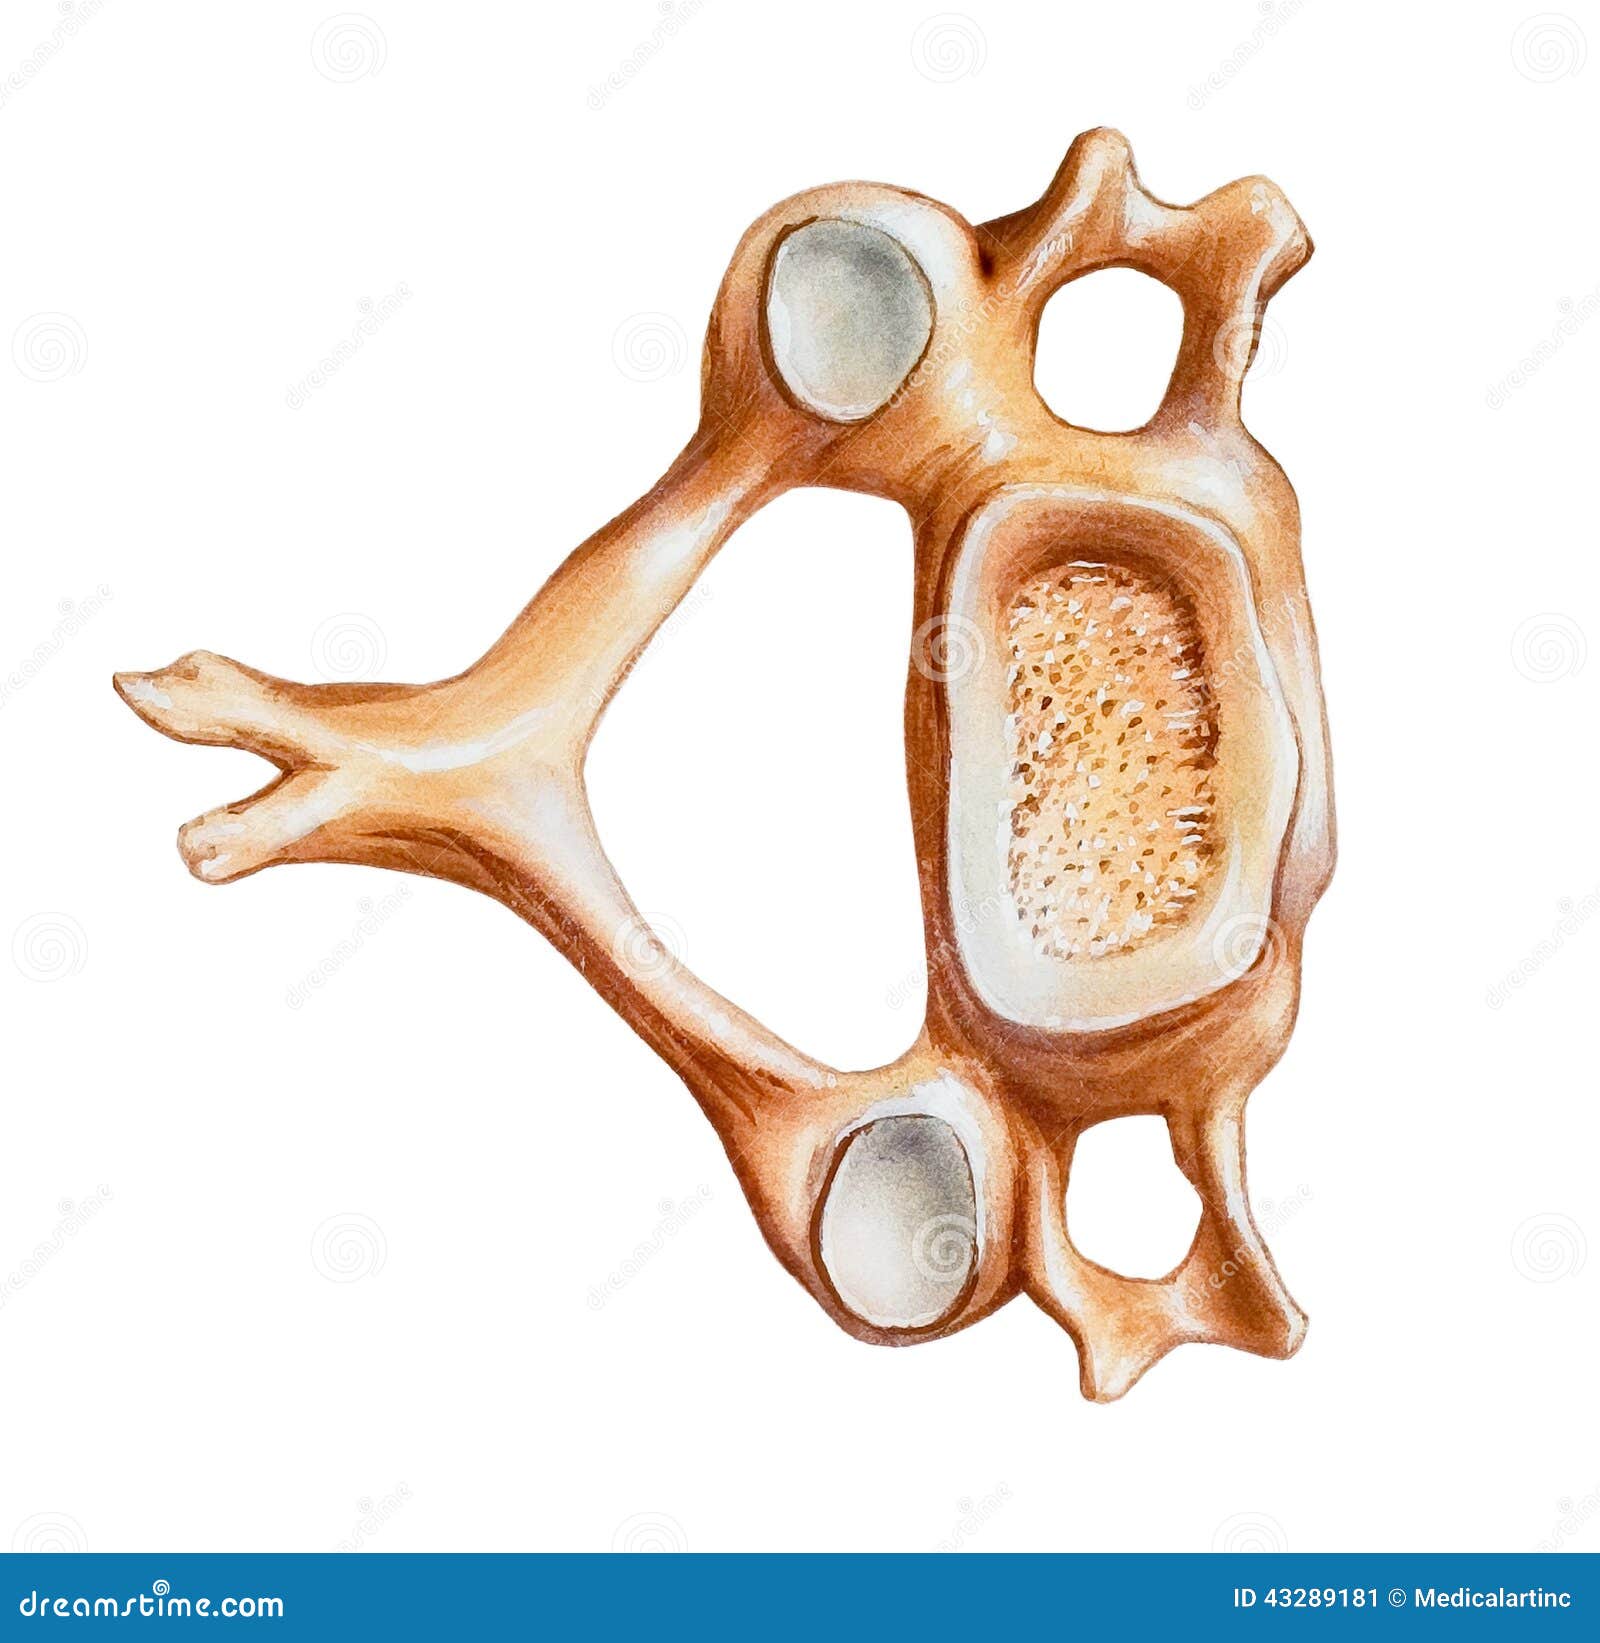 spine - fourth cervical vertebra